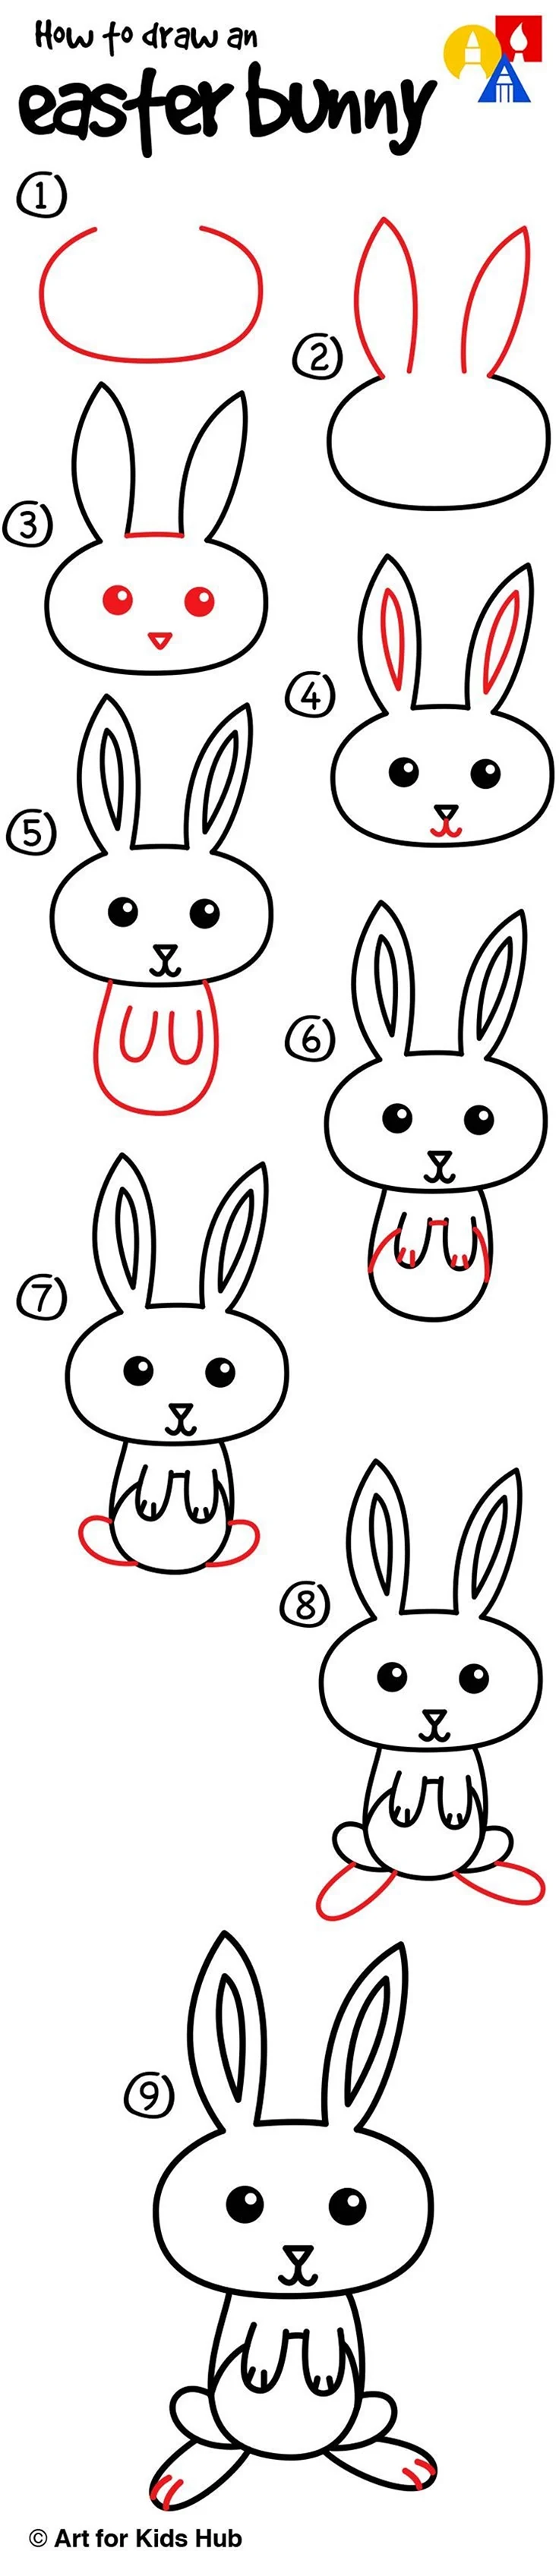 Нарисовать зайца поэтапно для детей